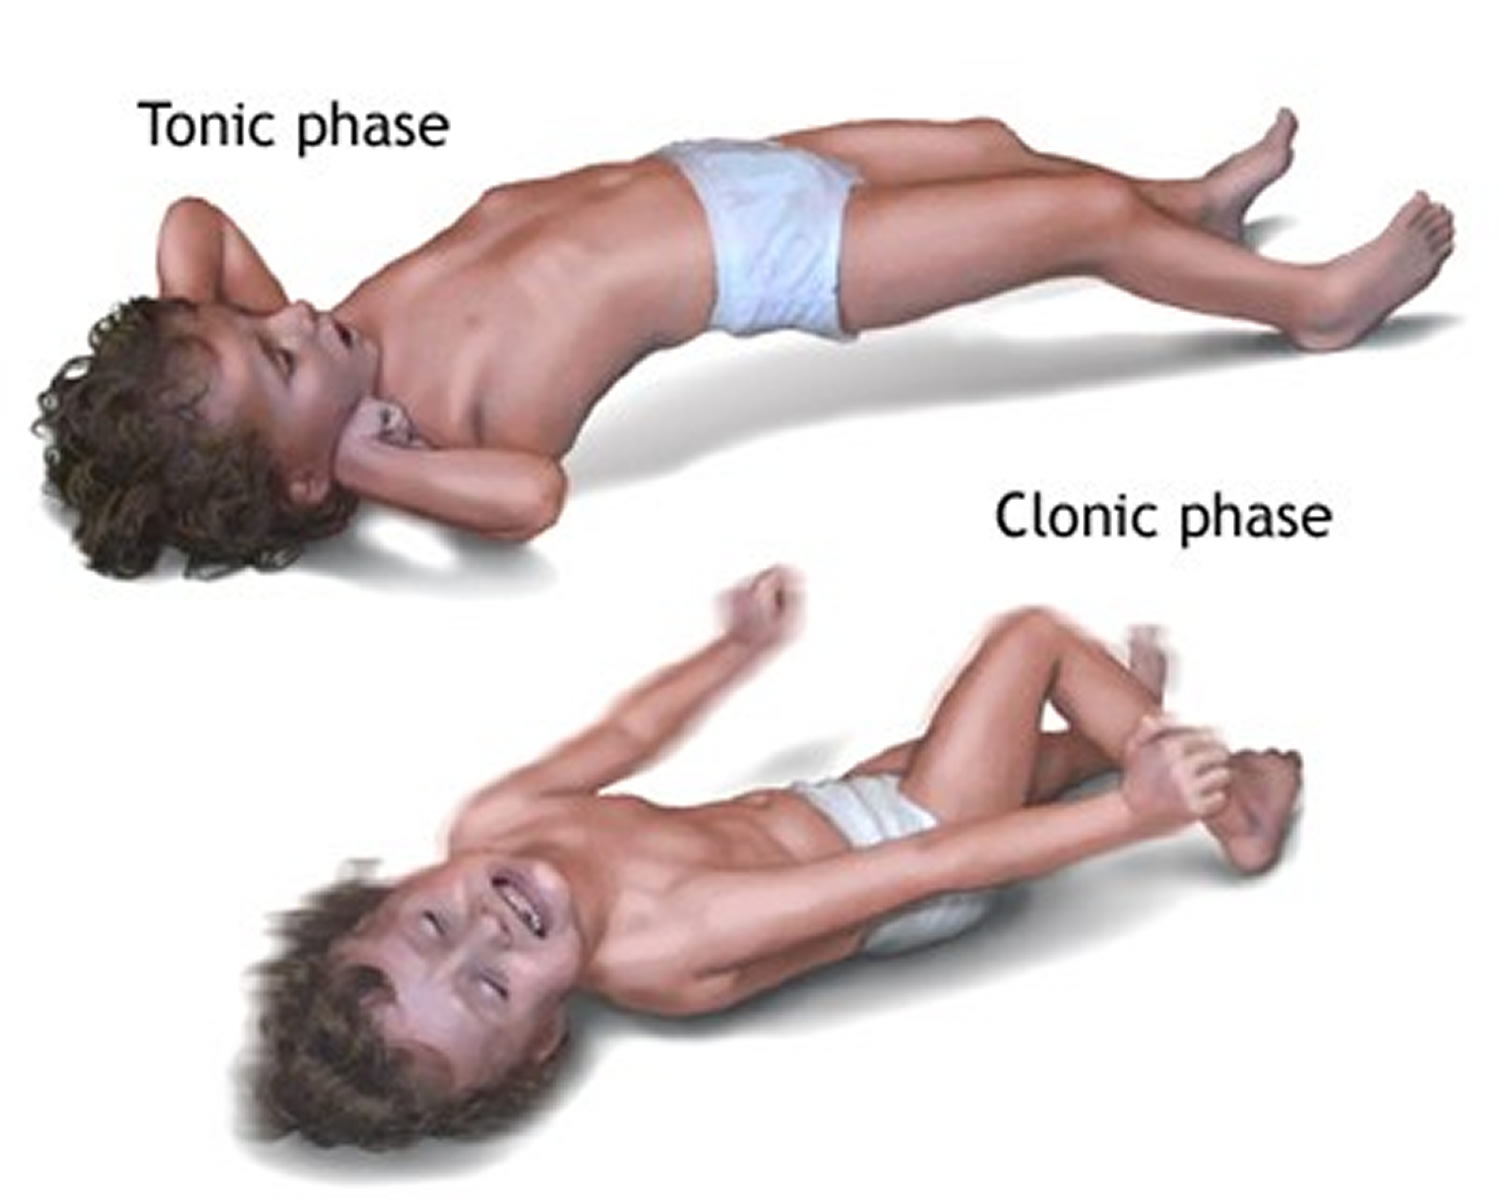 Тонические судороги у детей и клонические судороги